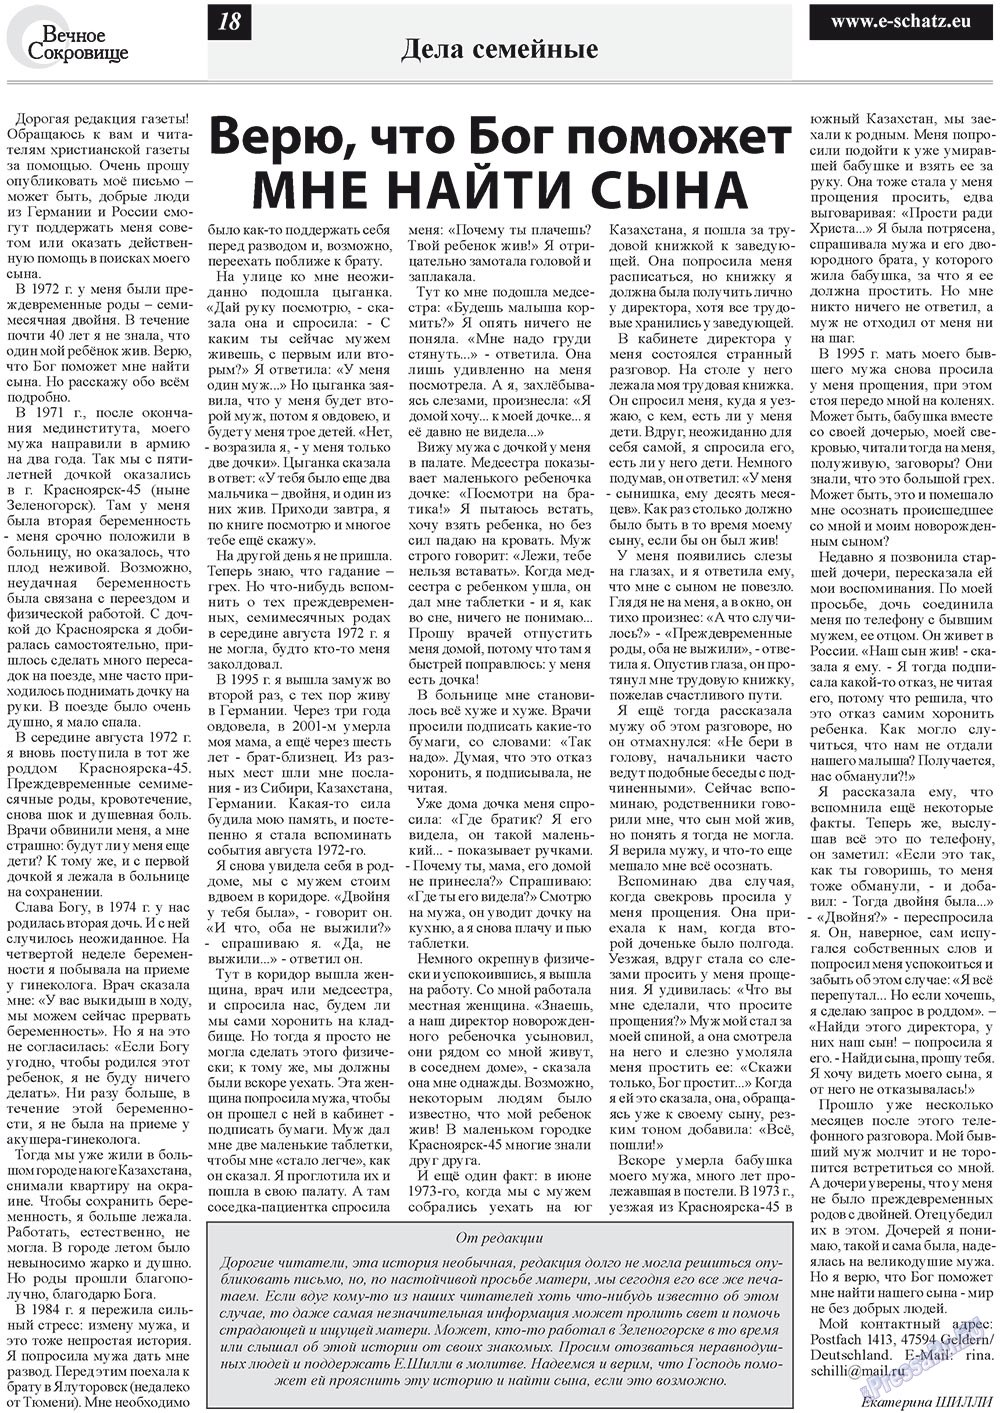 Вечное сокровище (газета). 2012 год, номер 4, стр. 18